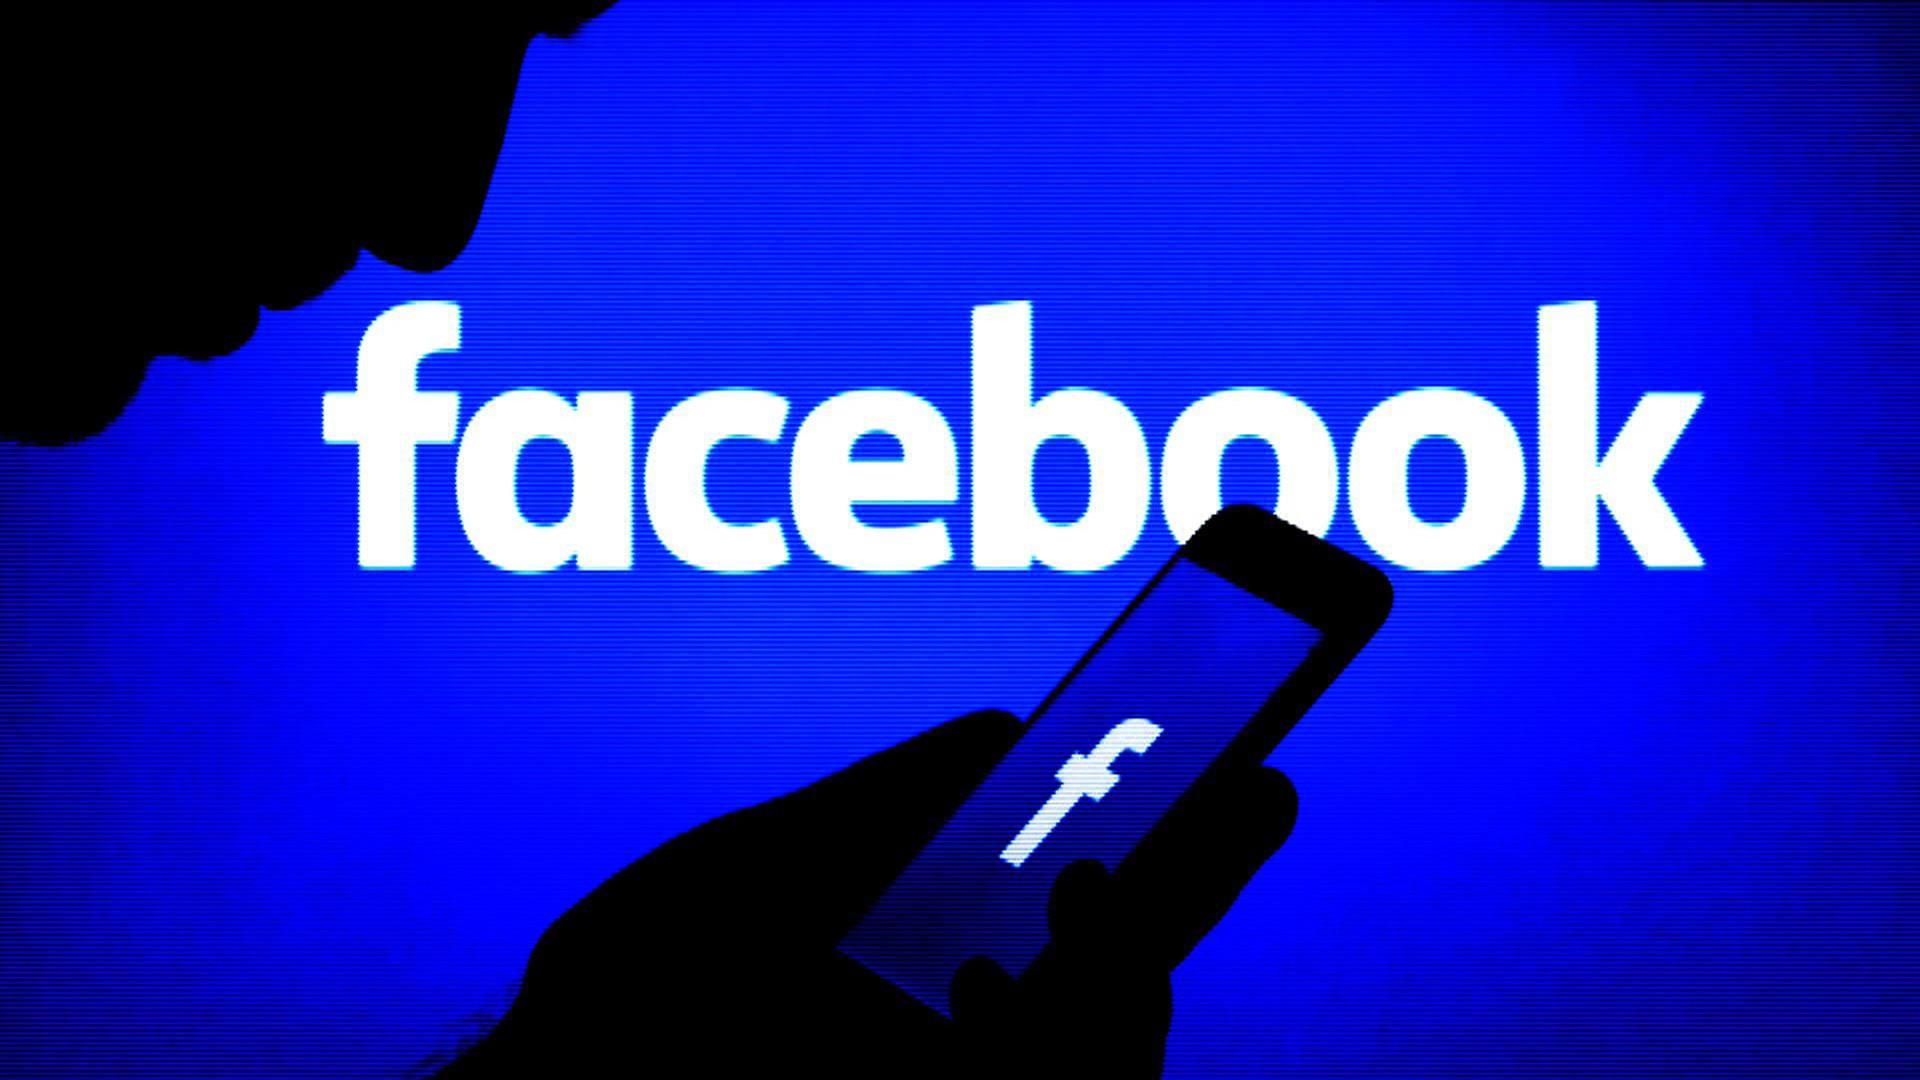  Opsioni i ri i Facebook që do t’ju lehtësojë jetën